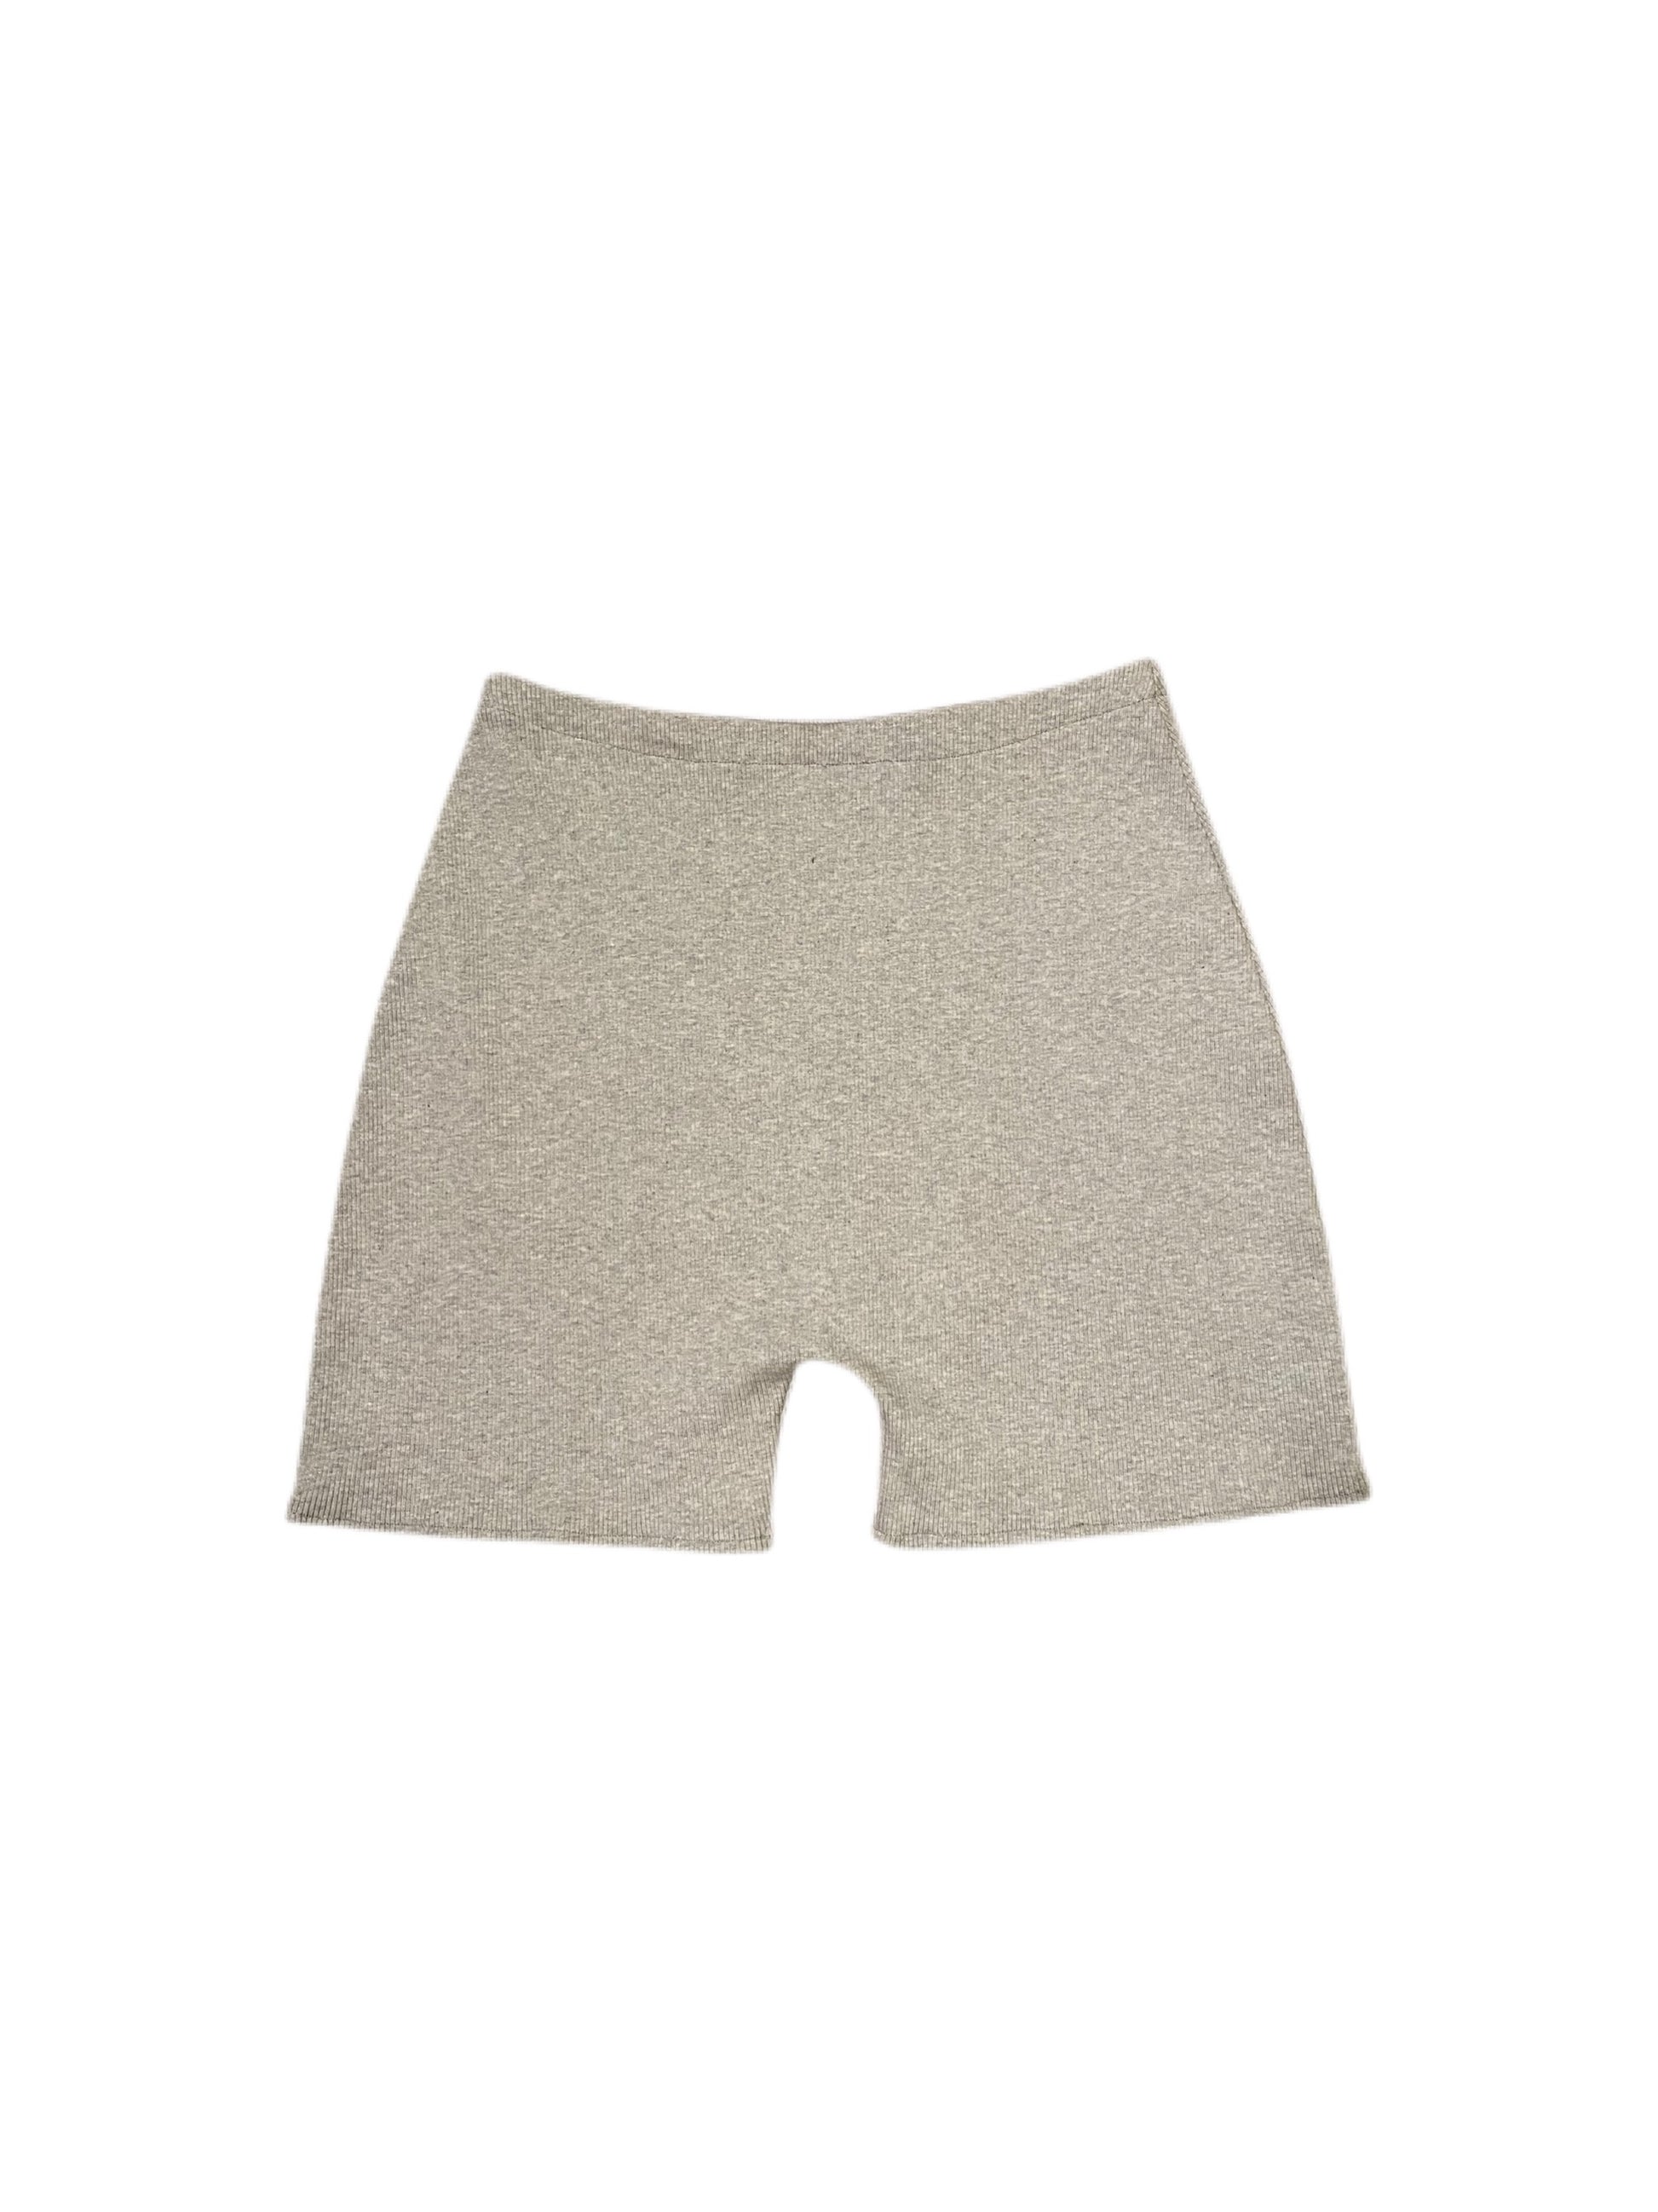 Grey Ribbed Lounge Shorts Product Back | Beatrice Bayliss